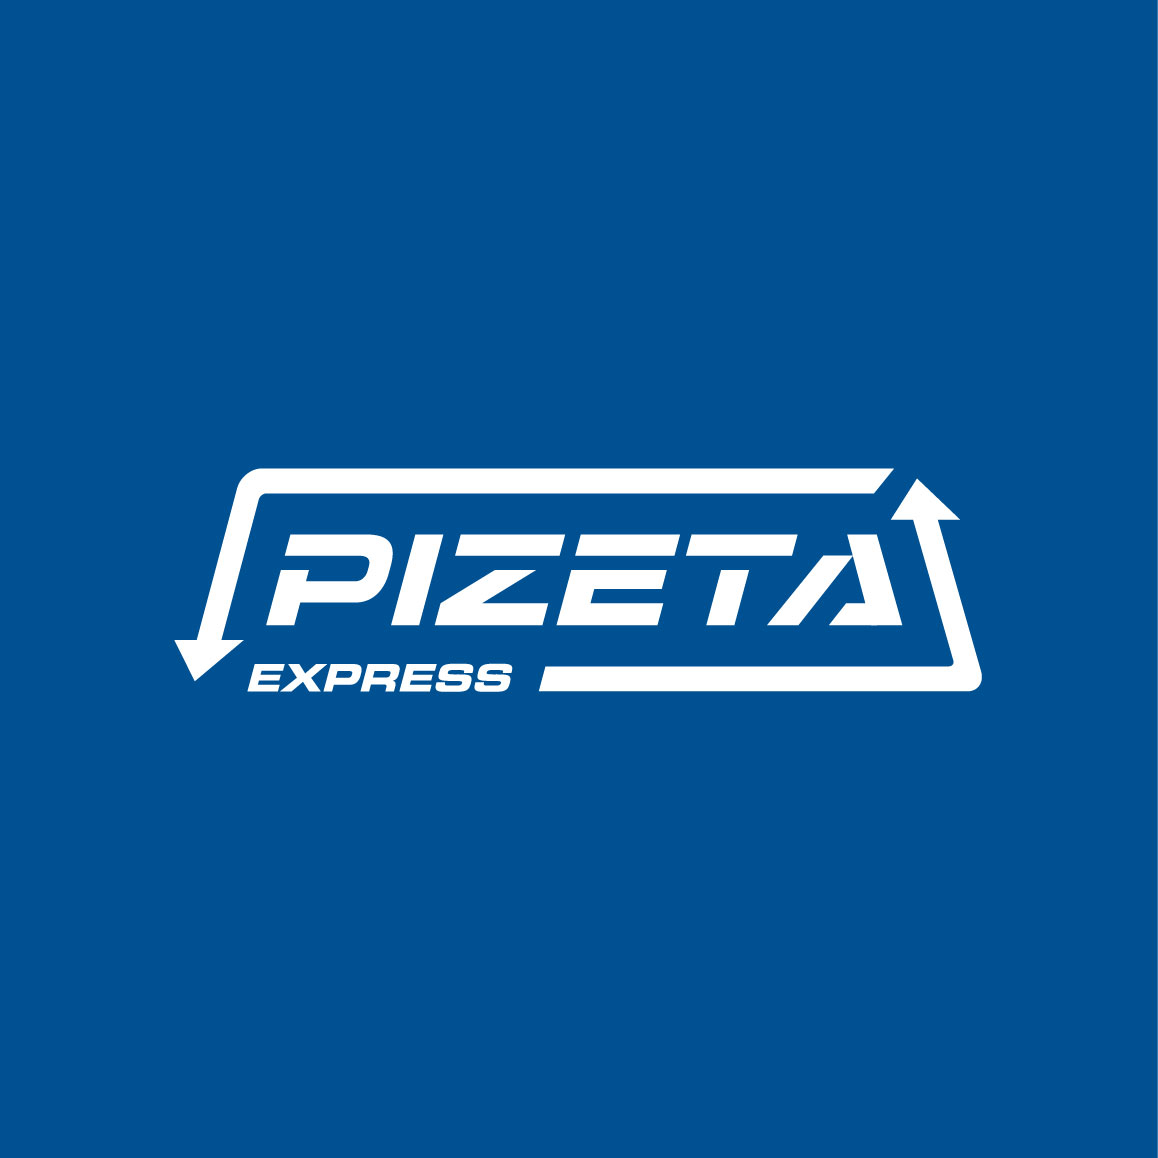 variante colore logo pizeta express